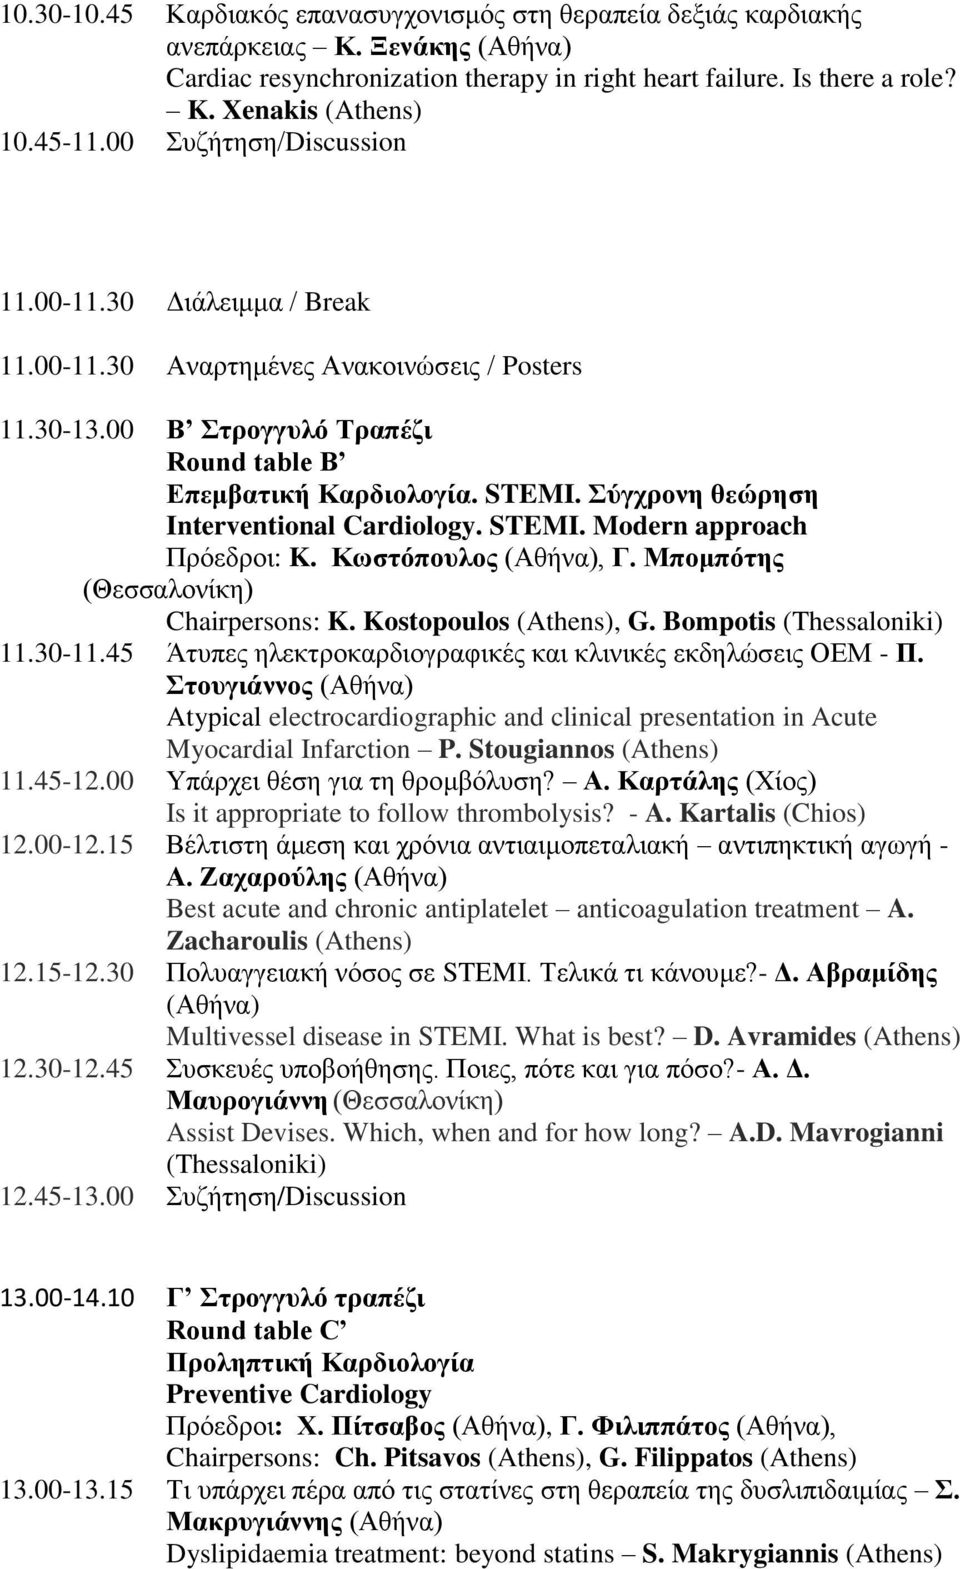 Σύγχρονη θεώρηση Interventional Cardiology. STEMI. Modern approach Πρόεδροι: K. Κωστόπουλος (Αθήνα), Γ. Μπομπότης (Θεσσαλονίκη) Chairpersons: K. Kostopoulos (Athens), G. Bompotis (Thessaloniki) 11.